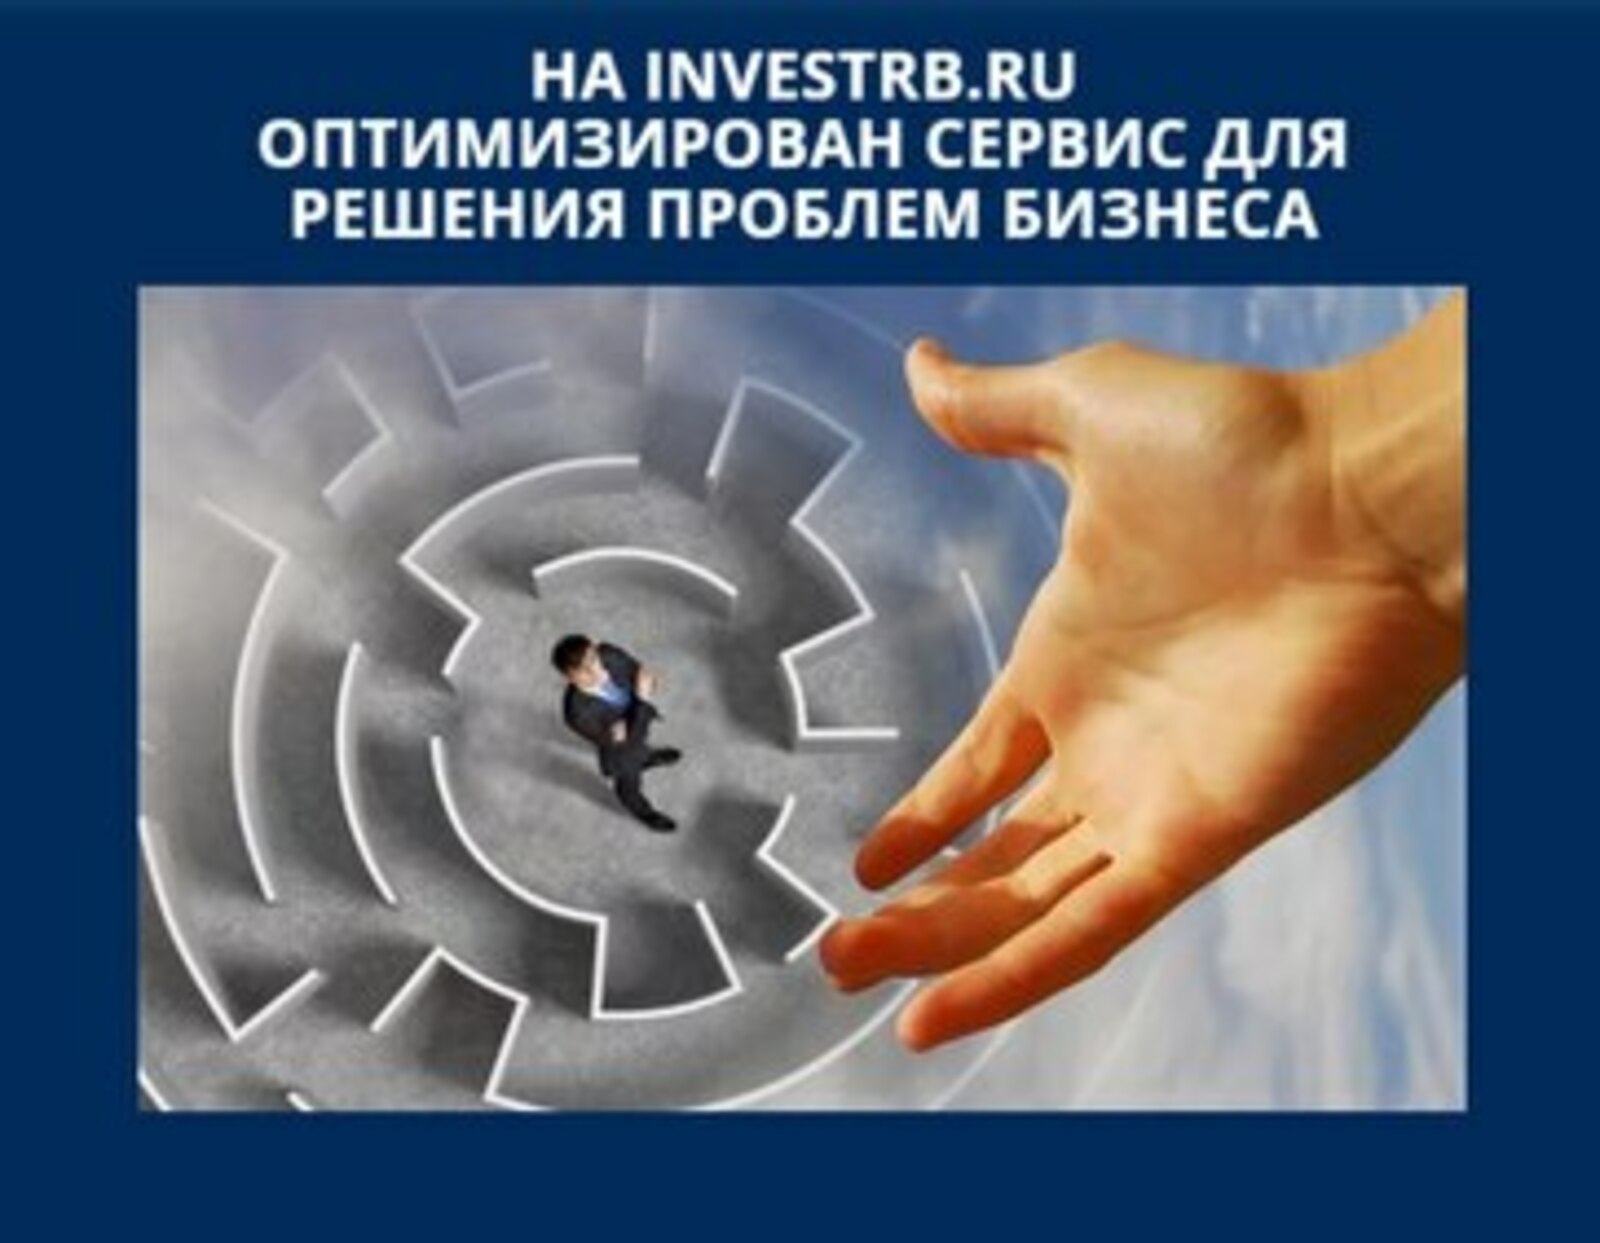 На портале INVESTRB.RU оптимизирован сервис для решения проблем бизнеса